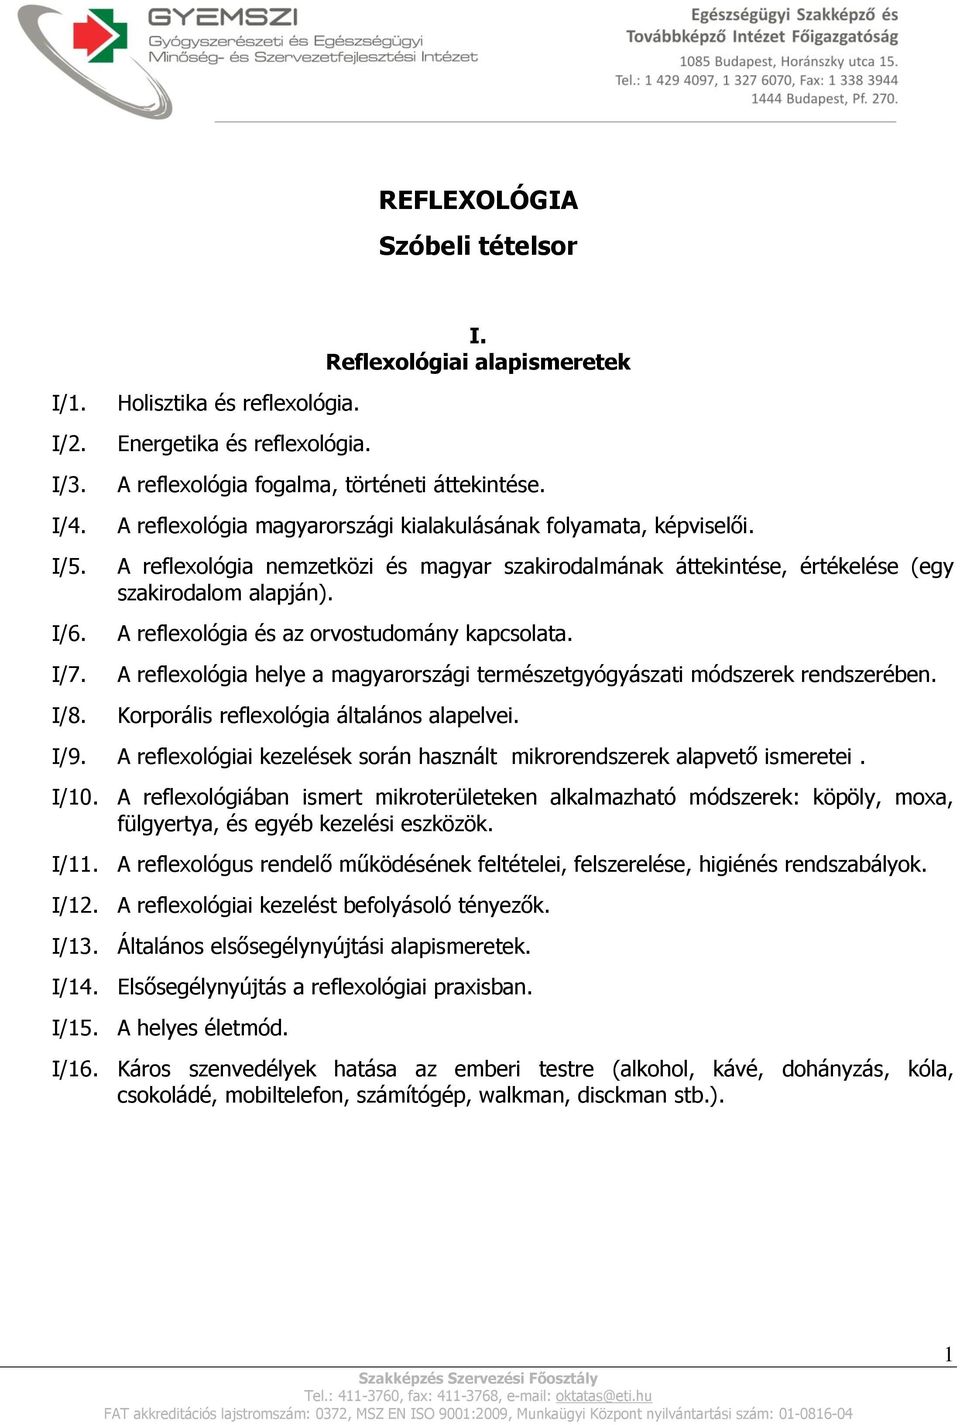 A reflexológia és az orvostudomány kapcsolata. A reflexológia helye a magyarországi természetgyógyászati módszerek rendszerében. Korporális reflexológia általános alapelvei. I/9.